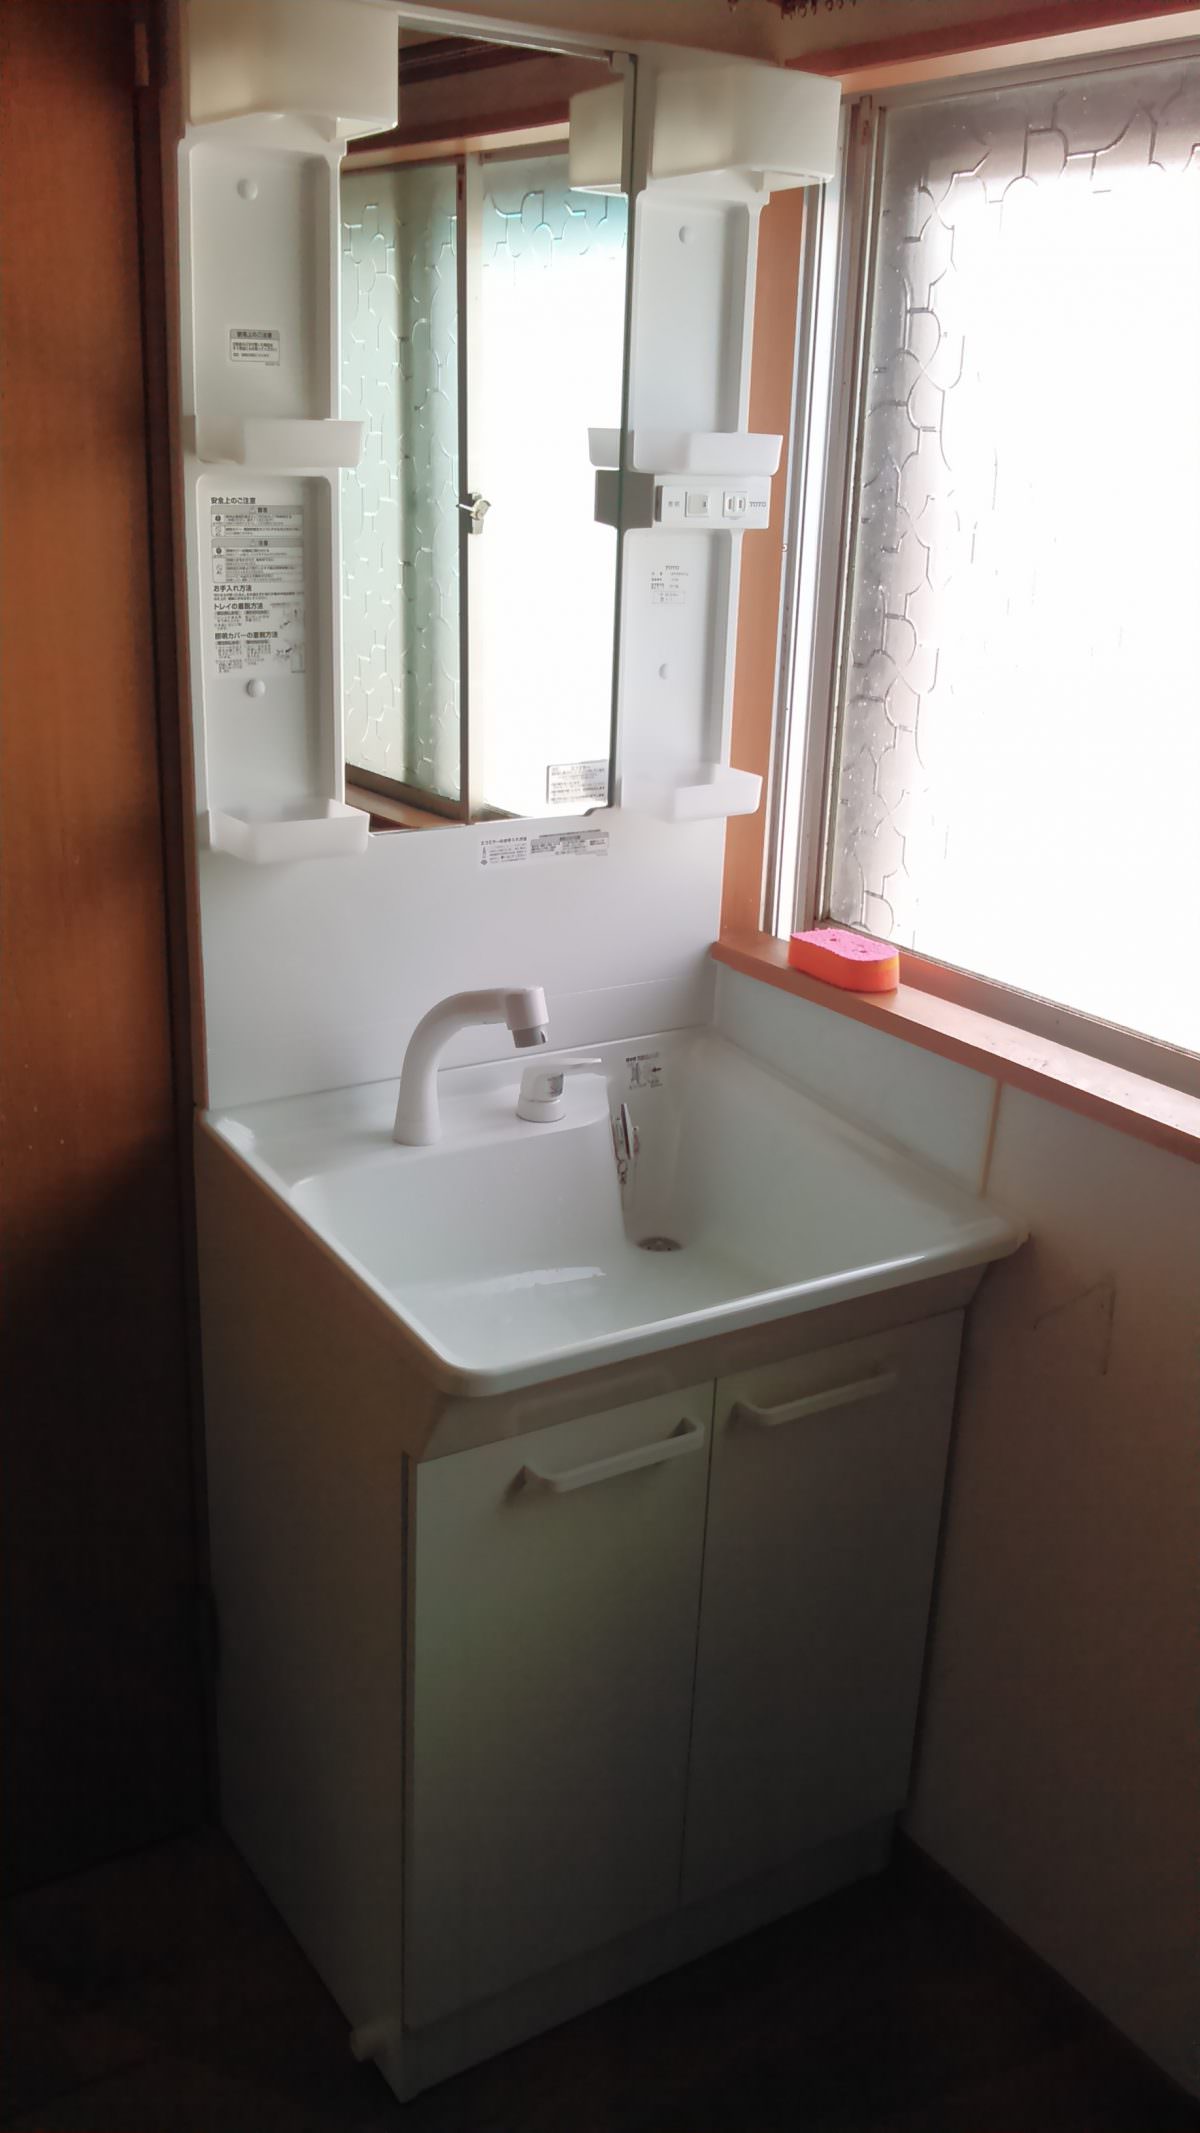 洗面化粧台交換 Toto Keシリーズ 600幅 1面鏡エコミラー 洗面台やトイレ 給湯器 エアコンなどの交換なら便利屋handyman